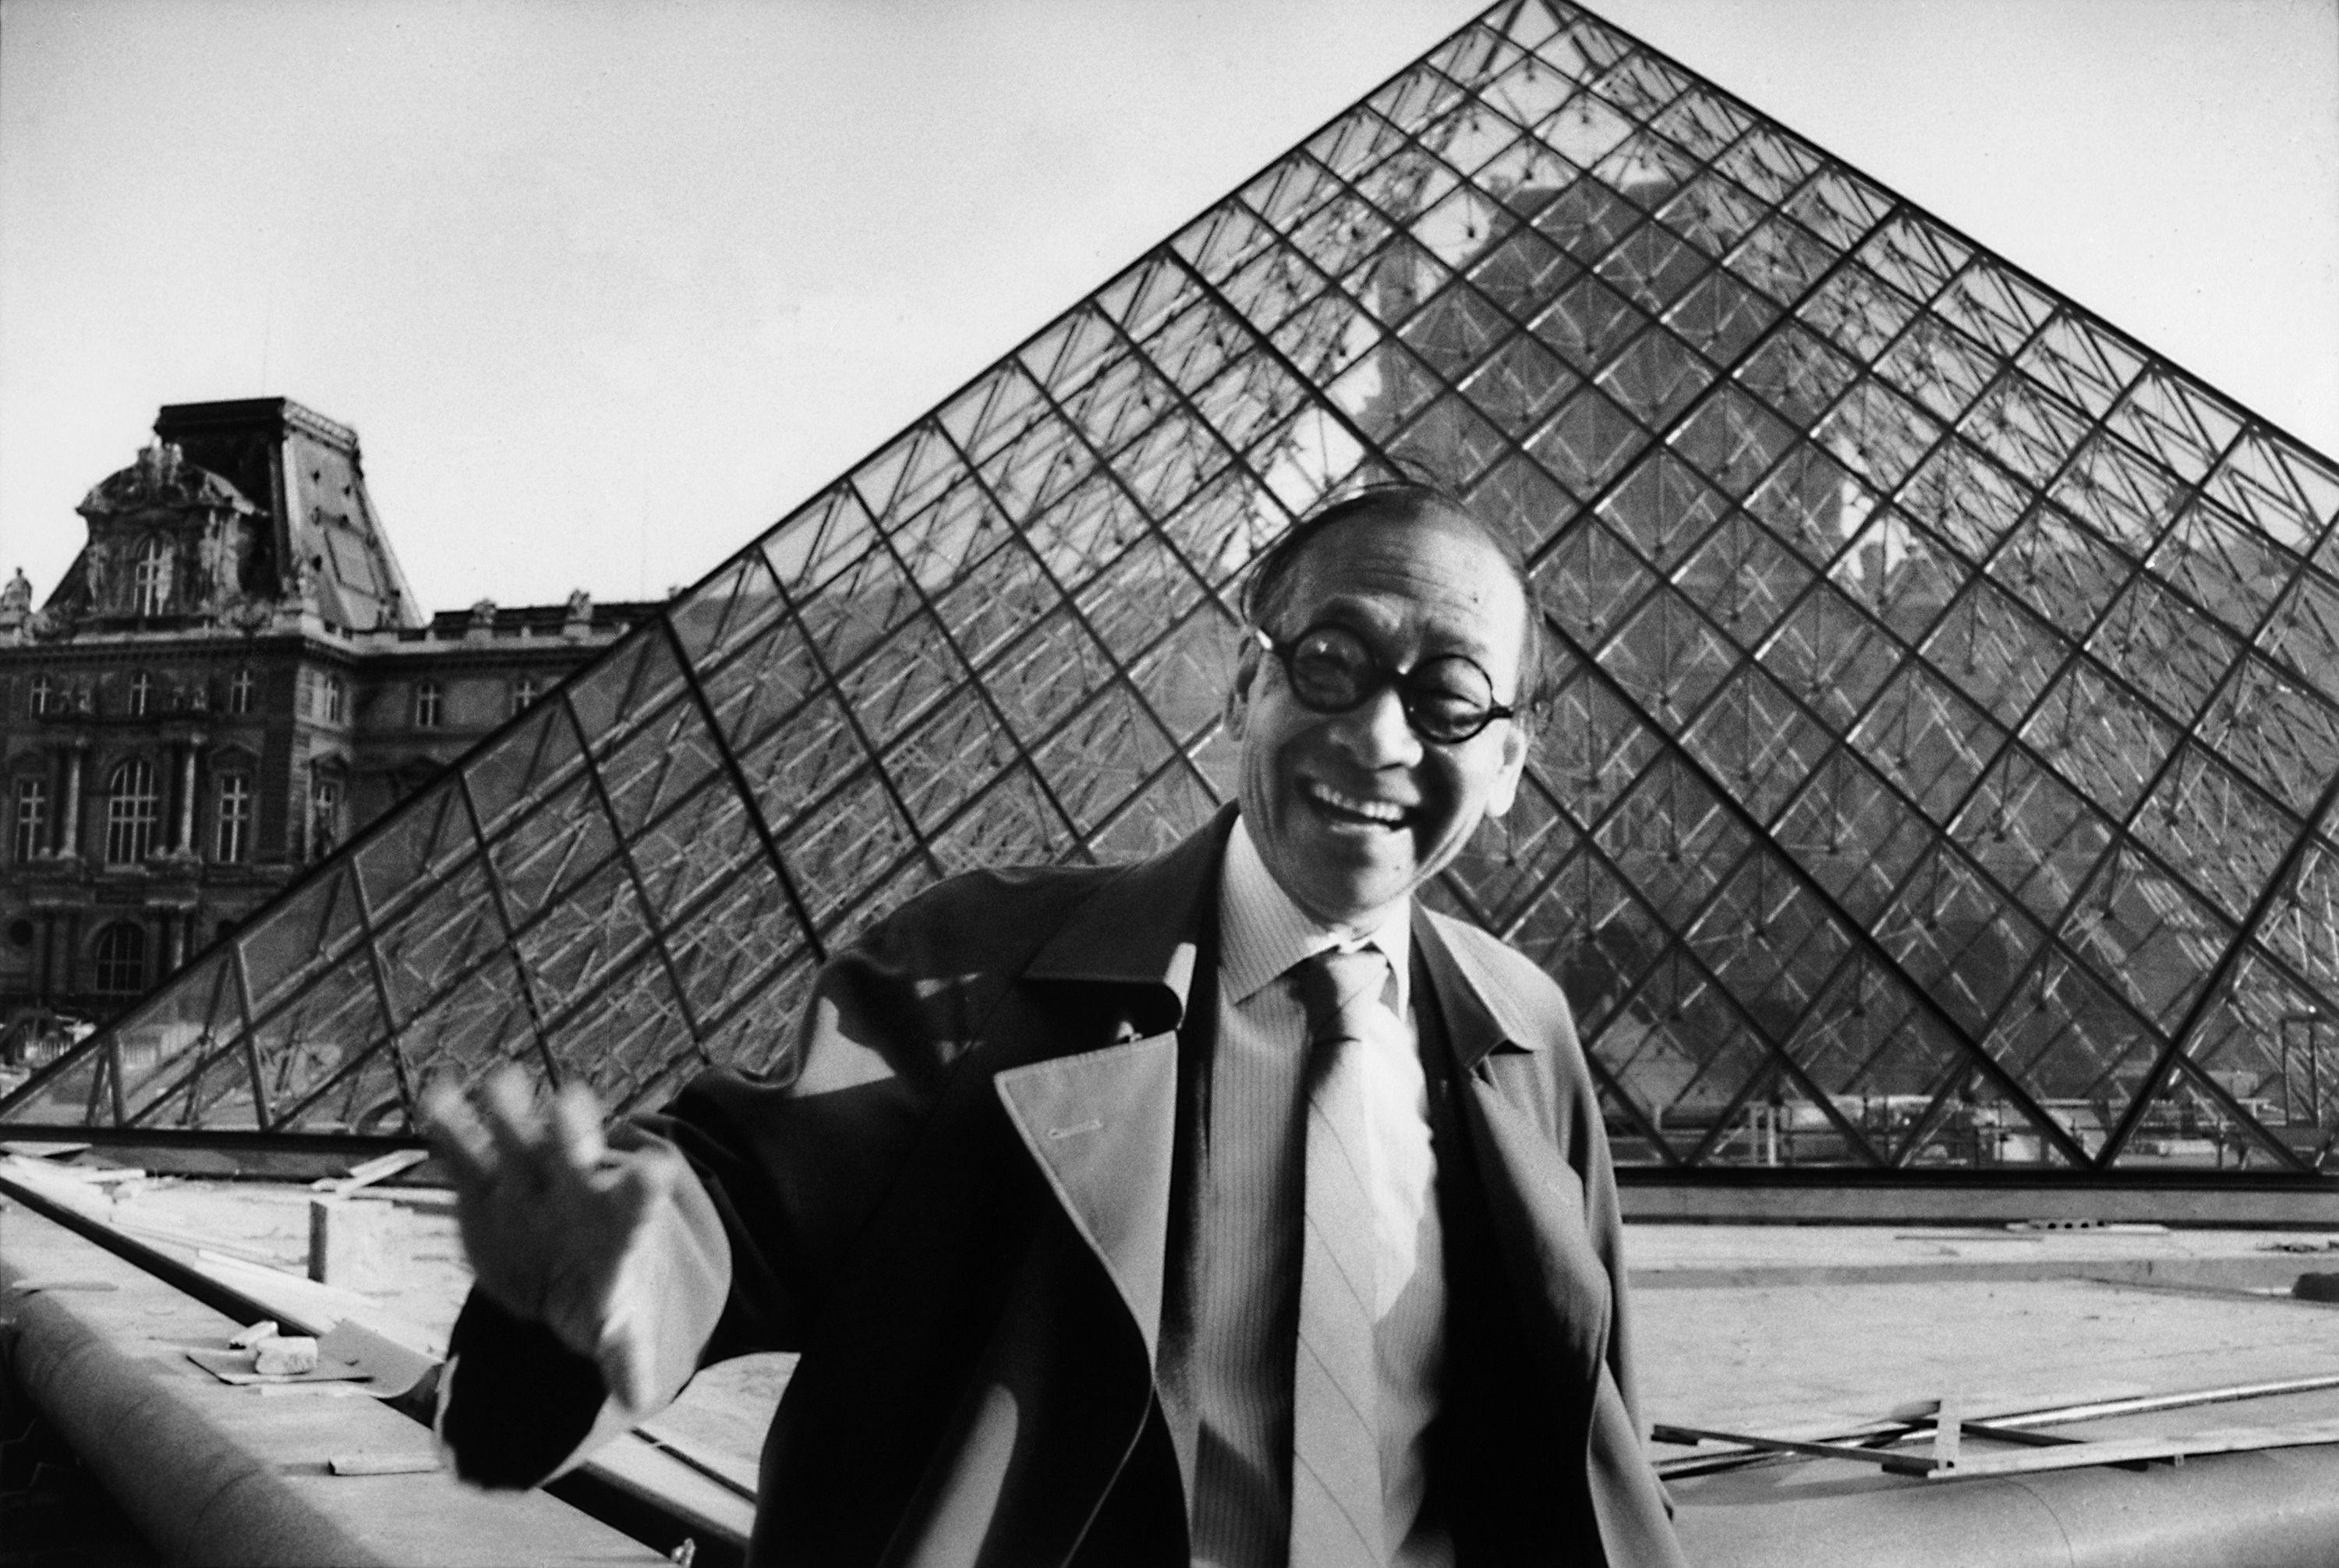 Muere a los 102 años Ieoh Ming Pei, el arquitecto que diseñó la pirámide del Louvre